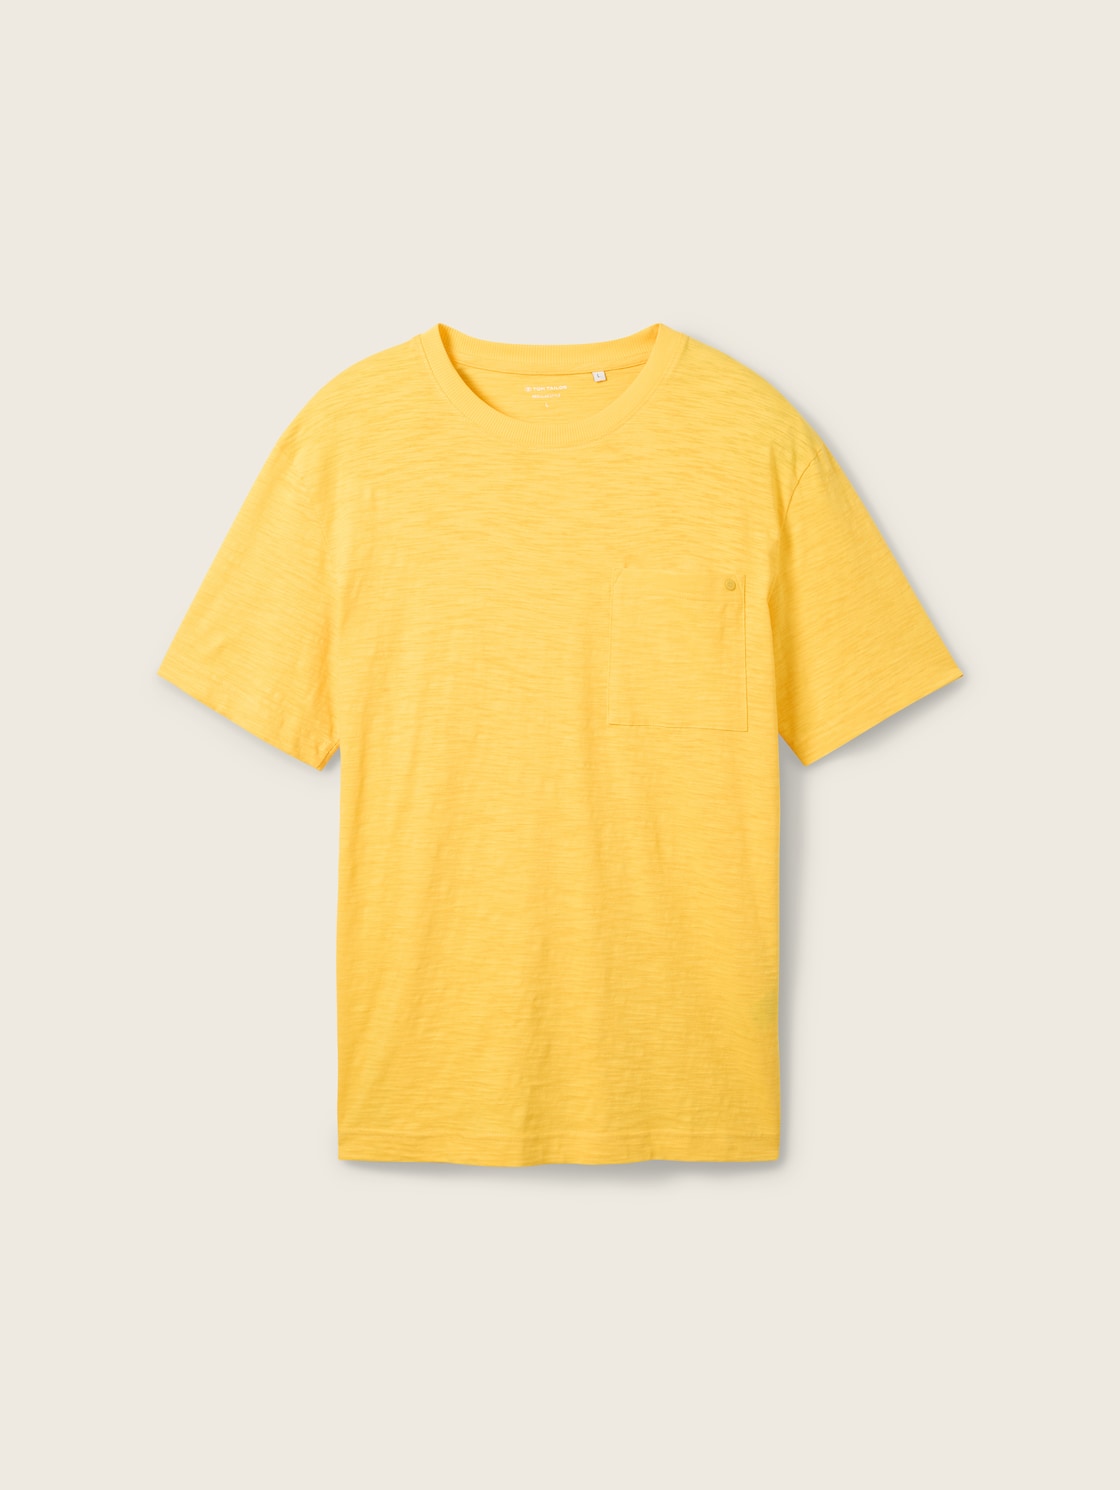 TOM TAILOR Herren Basic T-Shirt in Melange Optik, gelb, Melange Optik, Gr. XXXL von Tom Tailor